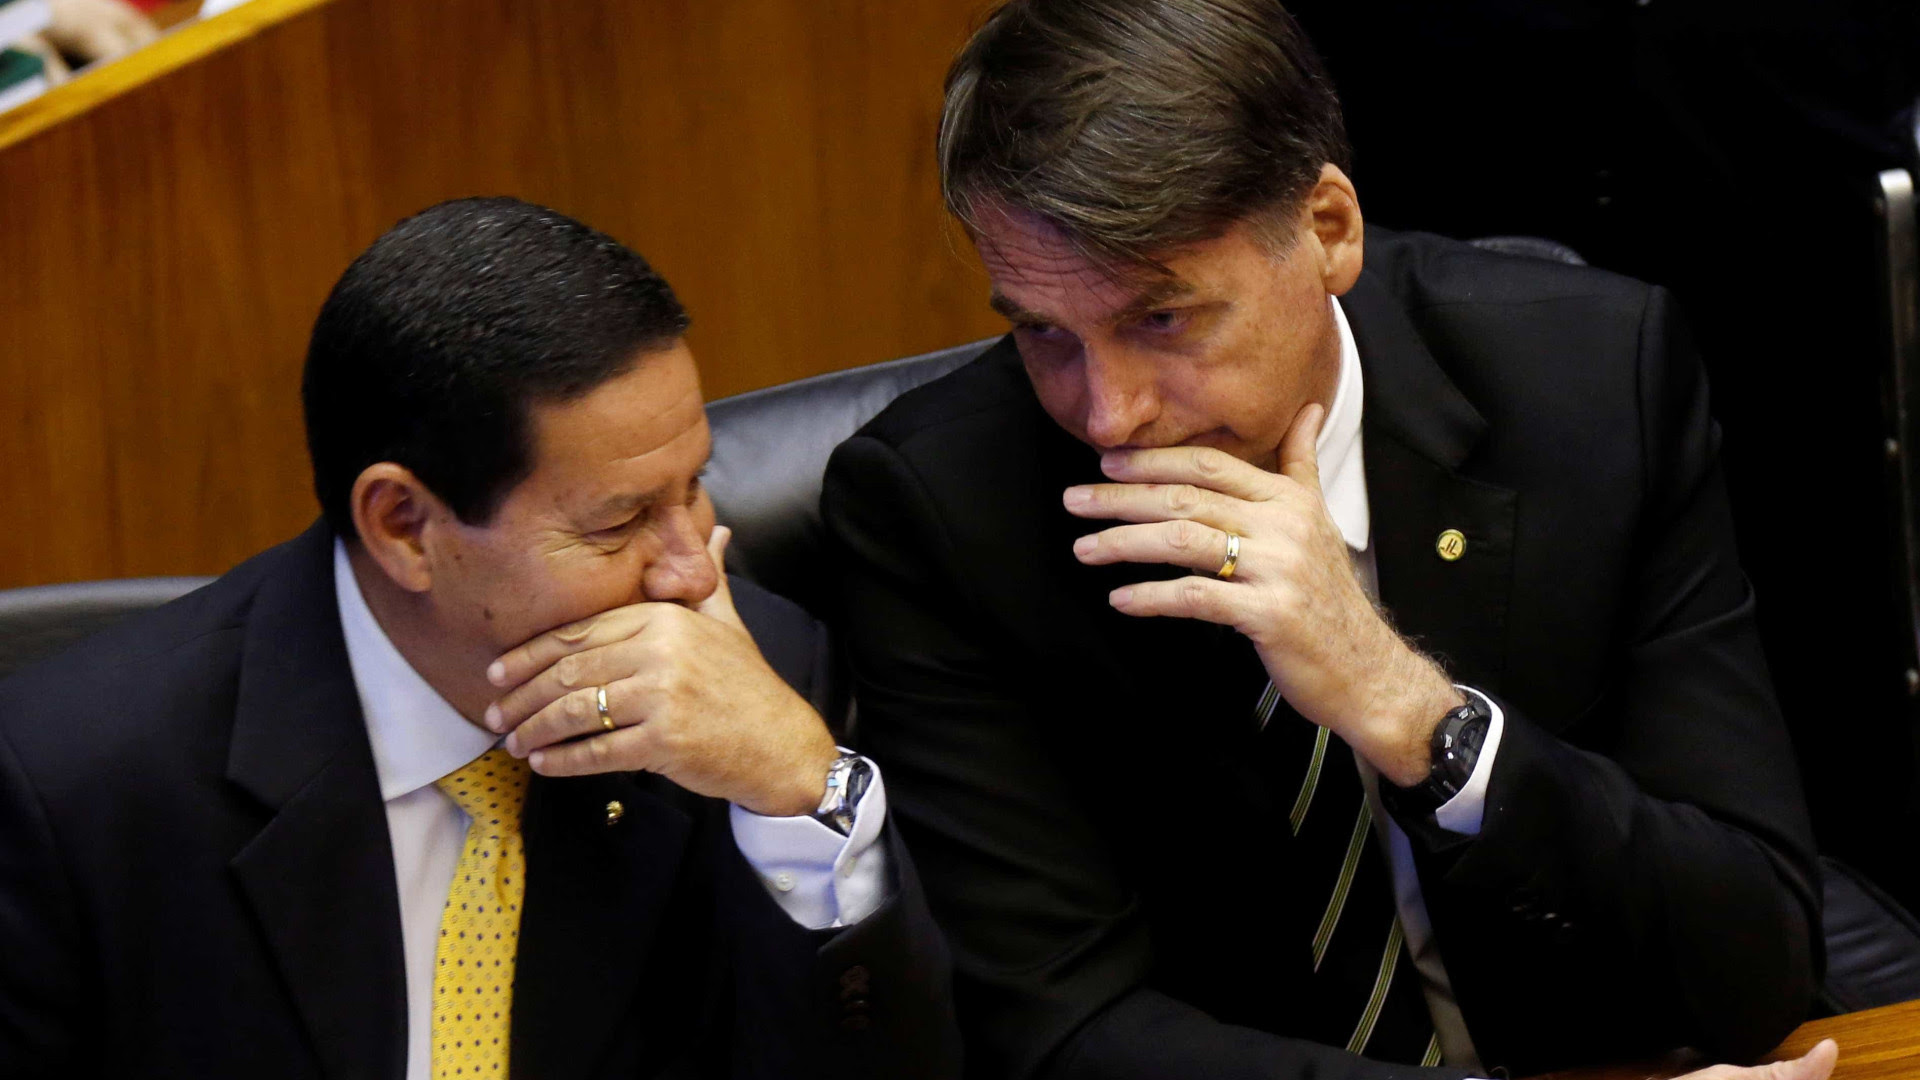 Eleição 2018: TSE reabre produção de provas em chapa de Bolsonaro